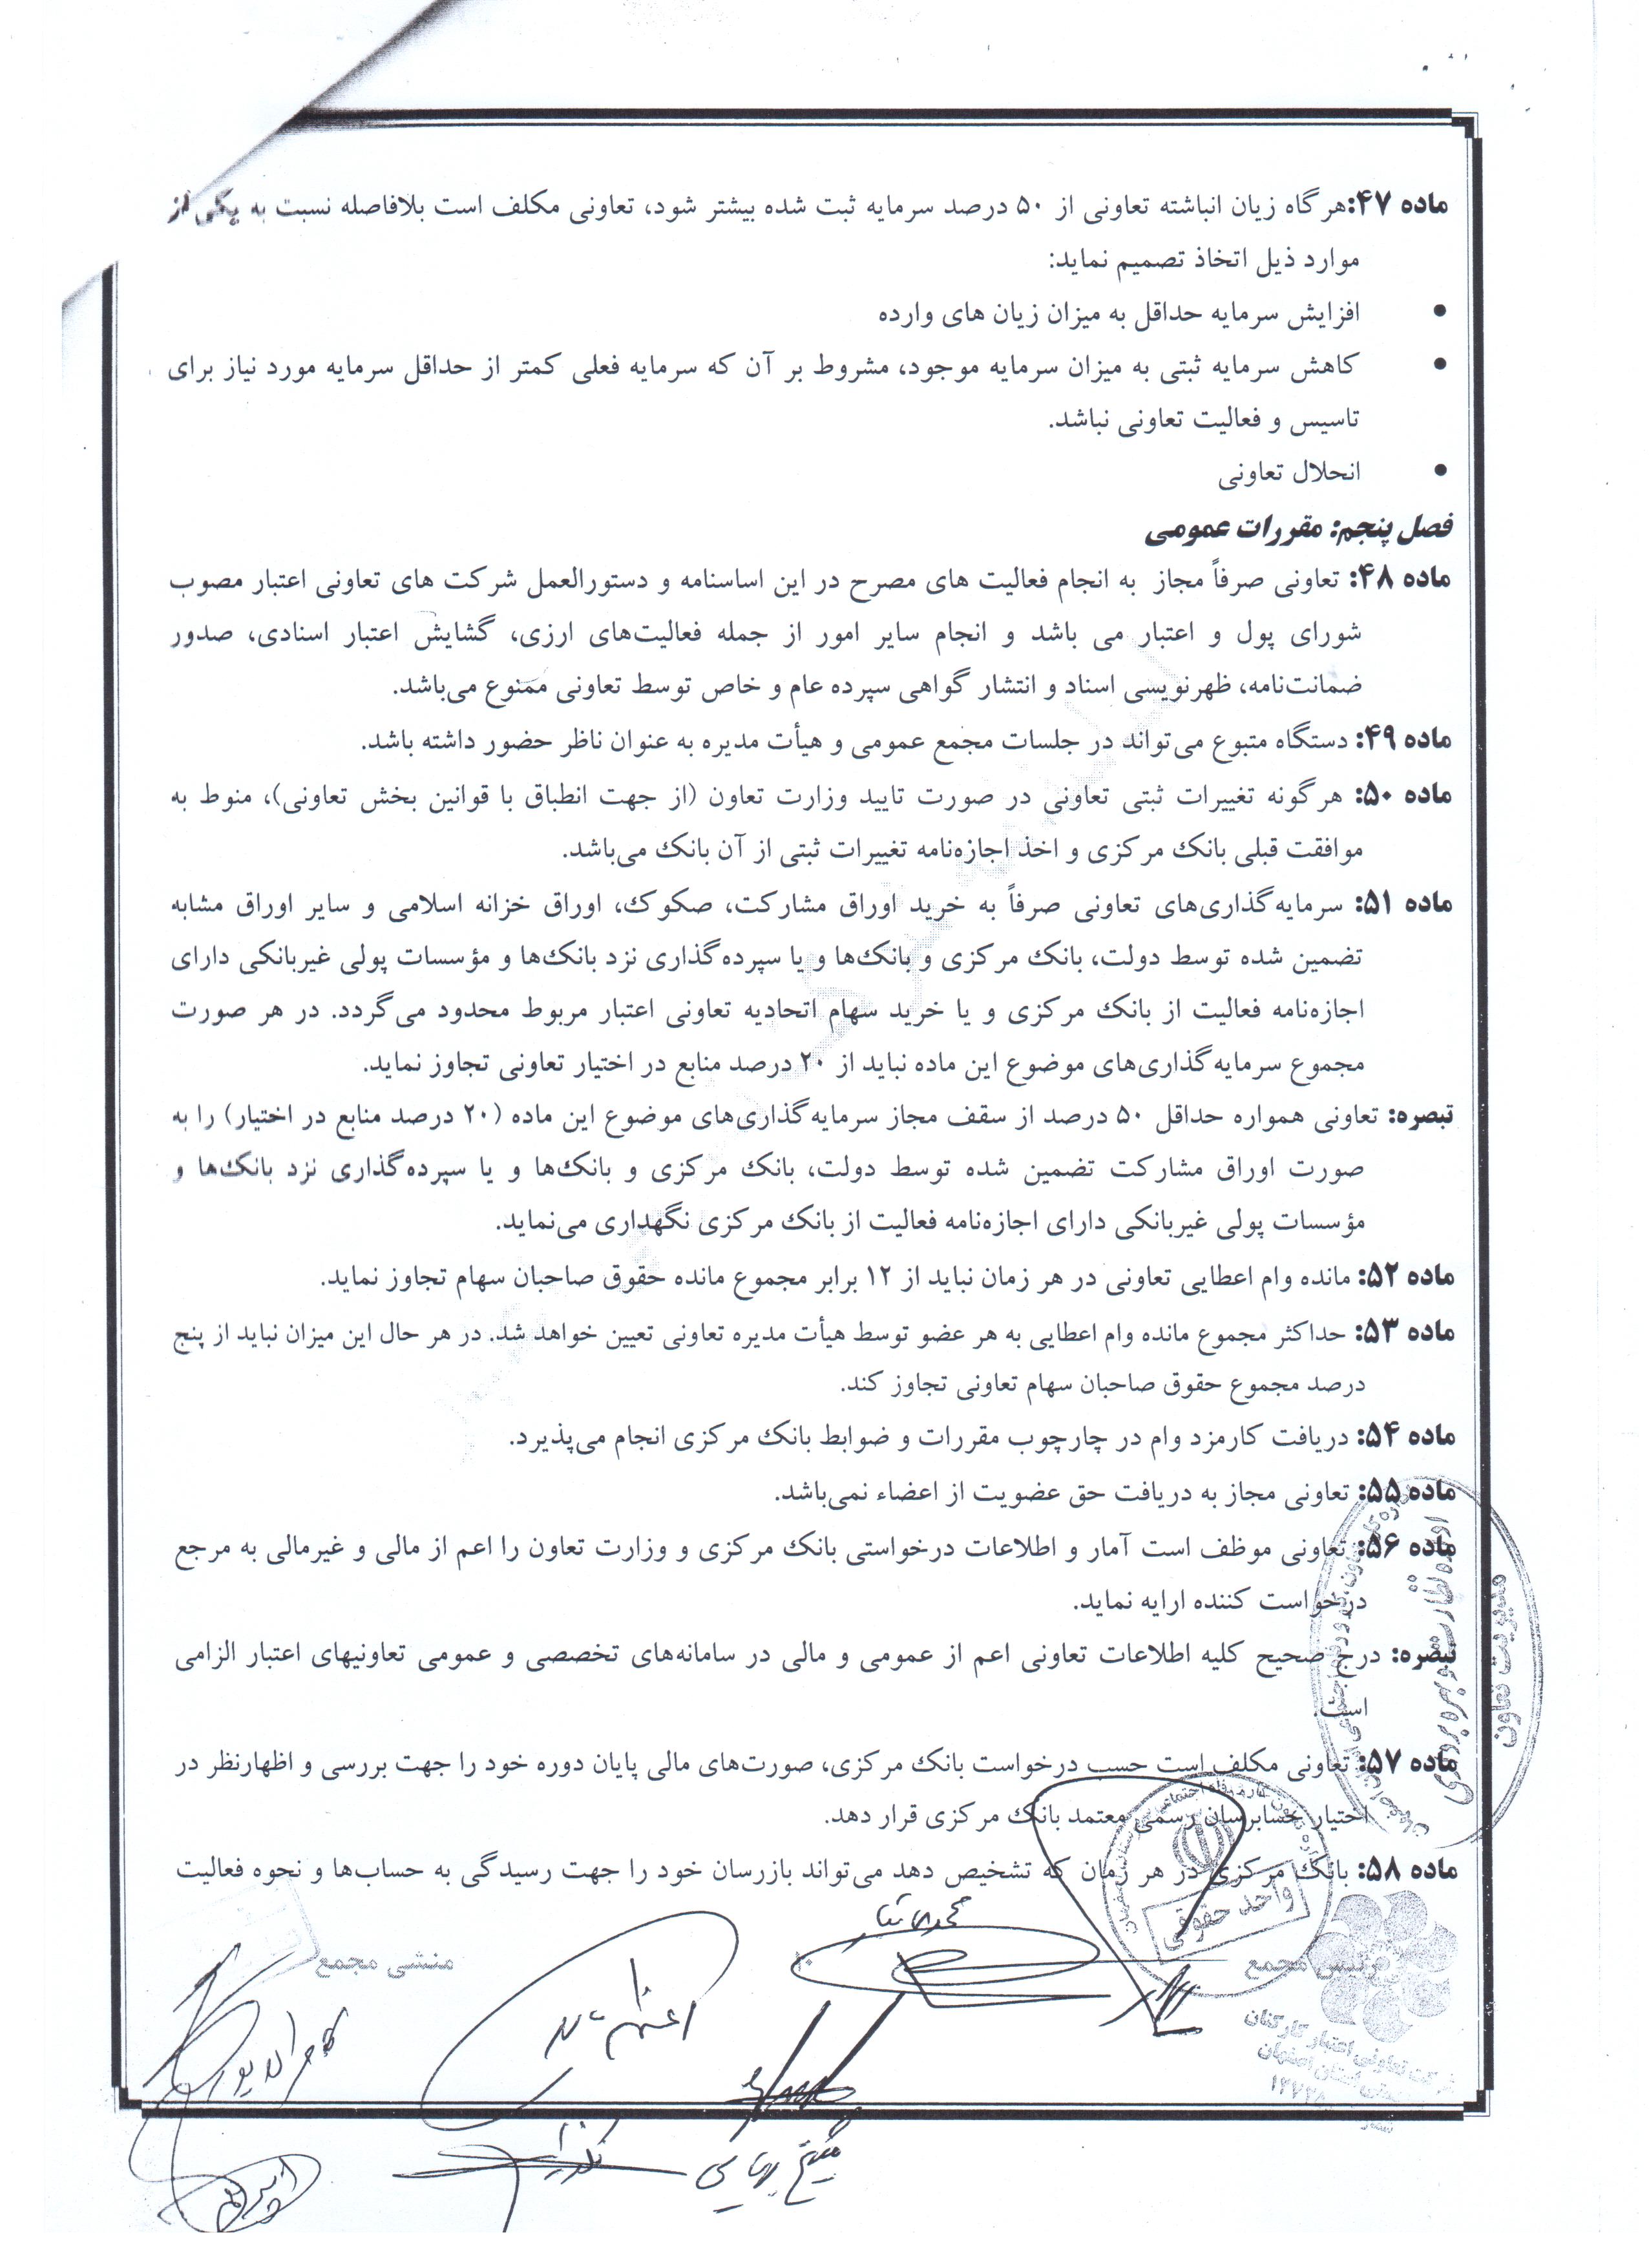 جدیدترین اساسنامه شرکت تعاونی اعتبار کارکنان بهزیستی استان اصفهان (1397)